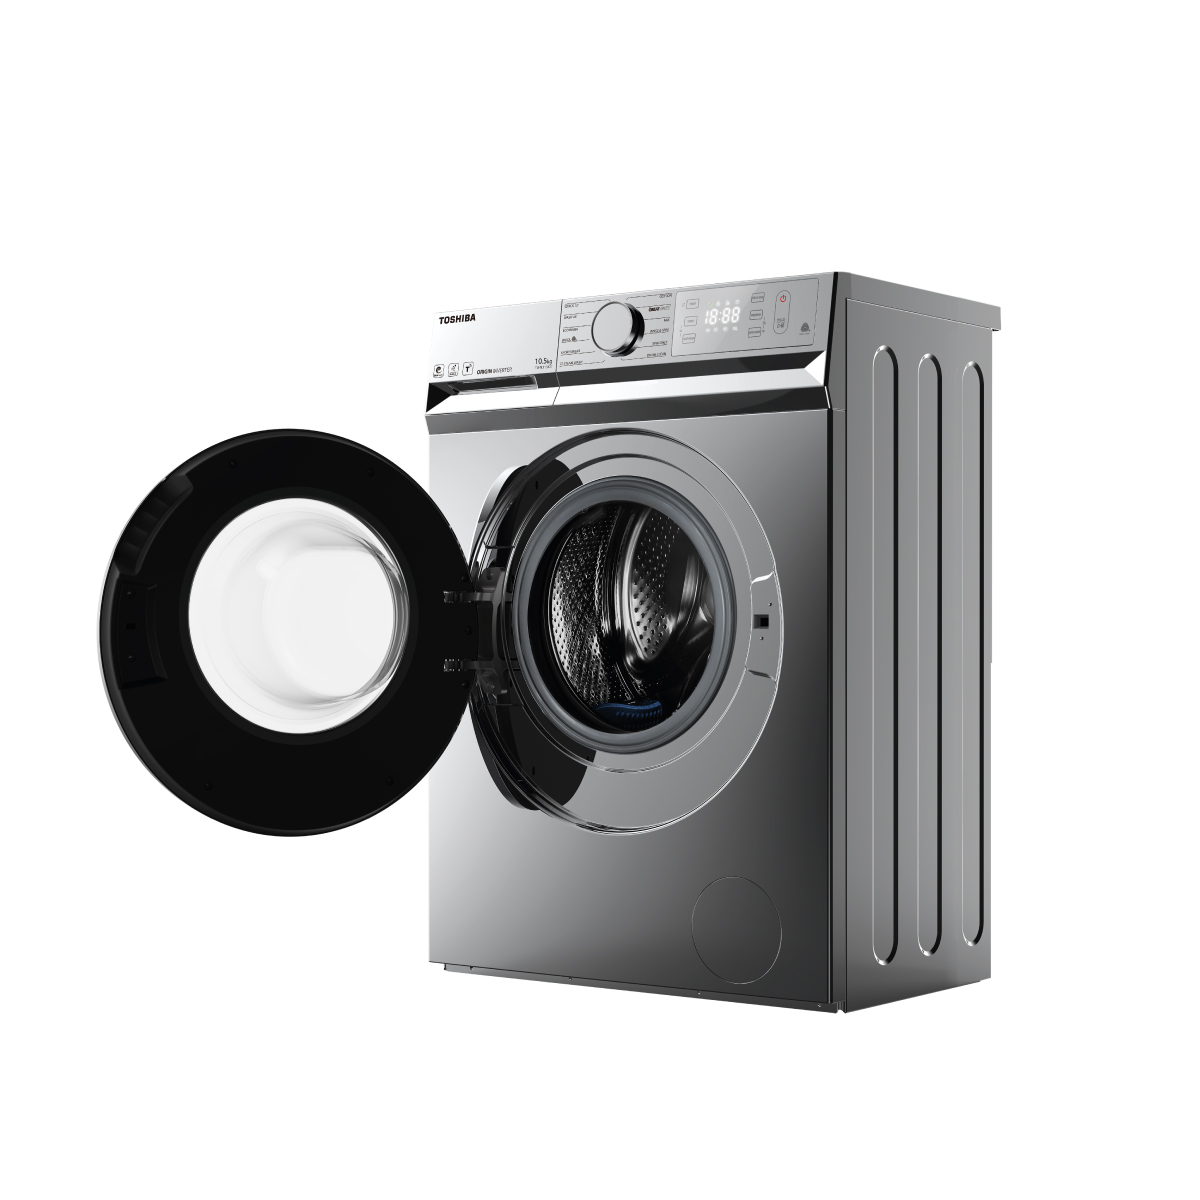 Máy giặt đầu tải trước Toshiba Thái Lan đem lại sự tiện dụng và hiệu quả vượt trội cho bạn! Cùng chiêm ngưỡng những tính năng đặc biệt và thiết kế sang trọng trên chiếc máy giặt thông minh này.